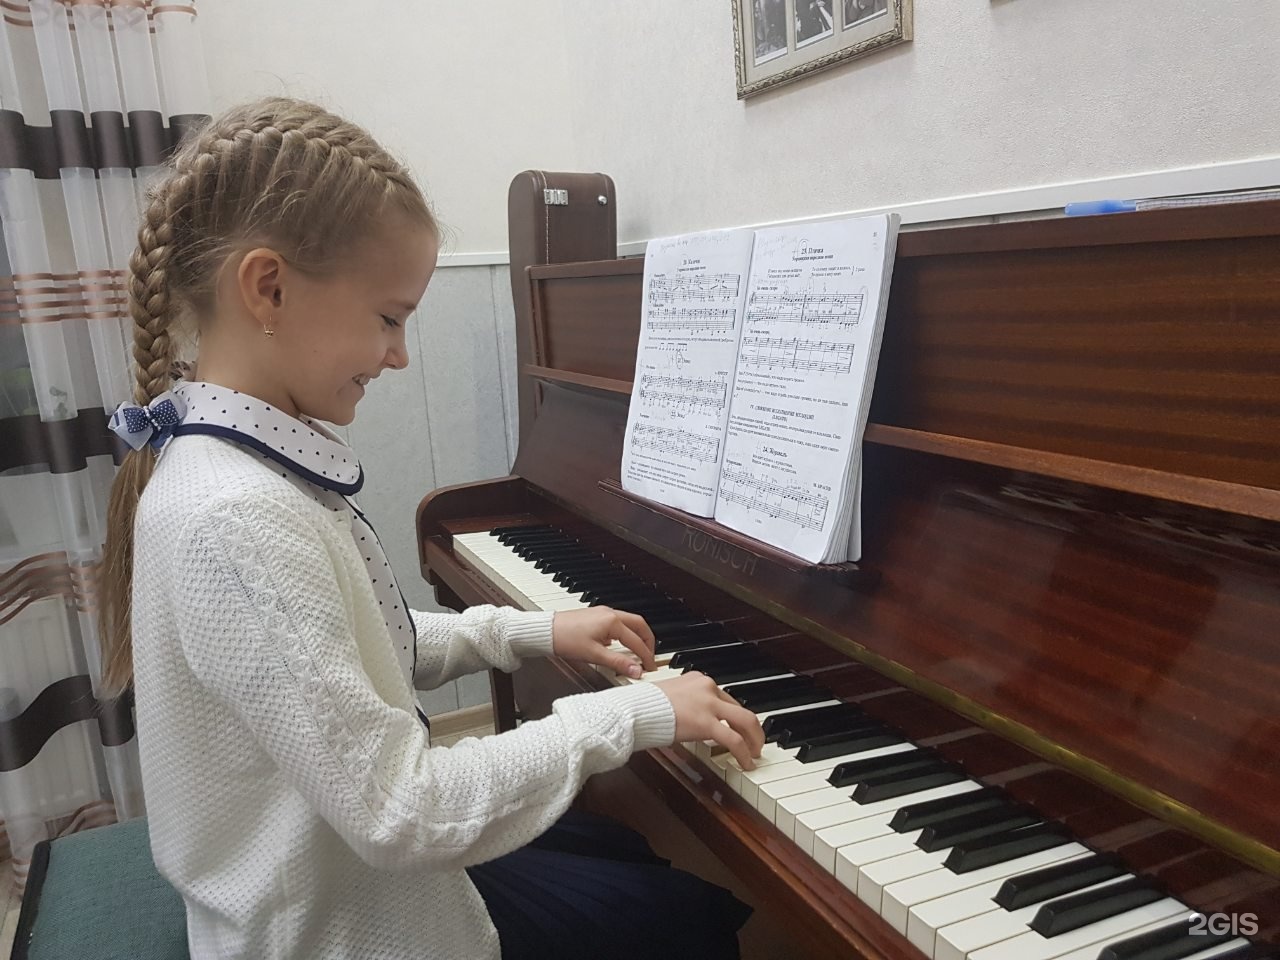 Уроки фортепиано в музыкальной школе. Занятия на фортепиано для детей. Репетитор по фортепиано. Преподаватель фортепиано. Преподаватель фортепиано в консерватории.